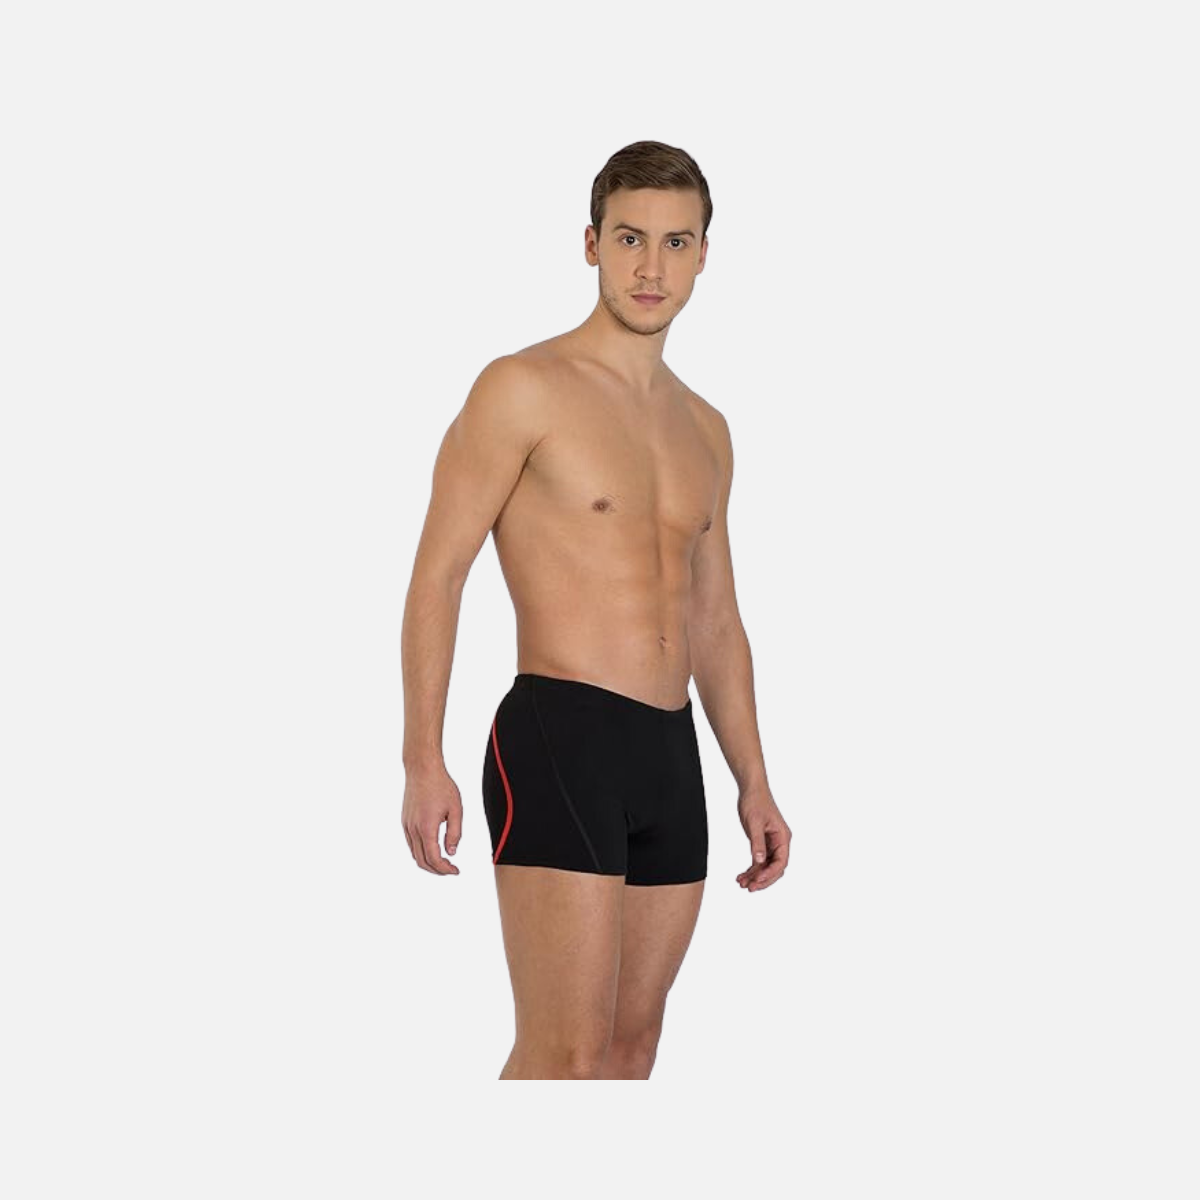 Speedo Essential Splice Aquashort Men's Swimwear -Black/Lava Red